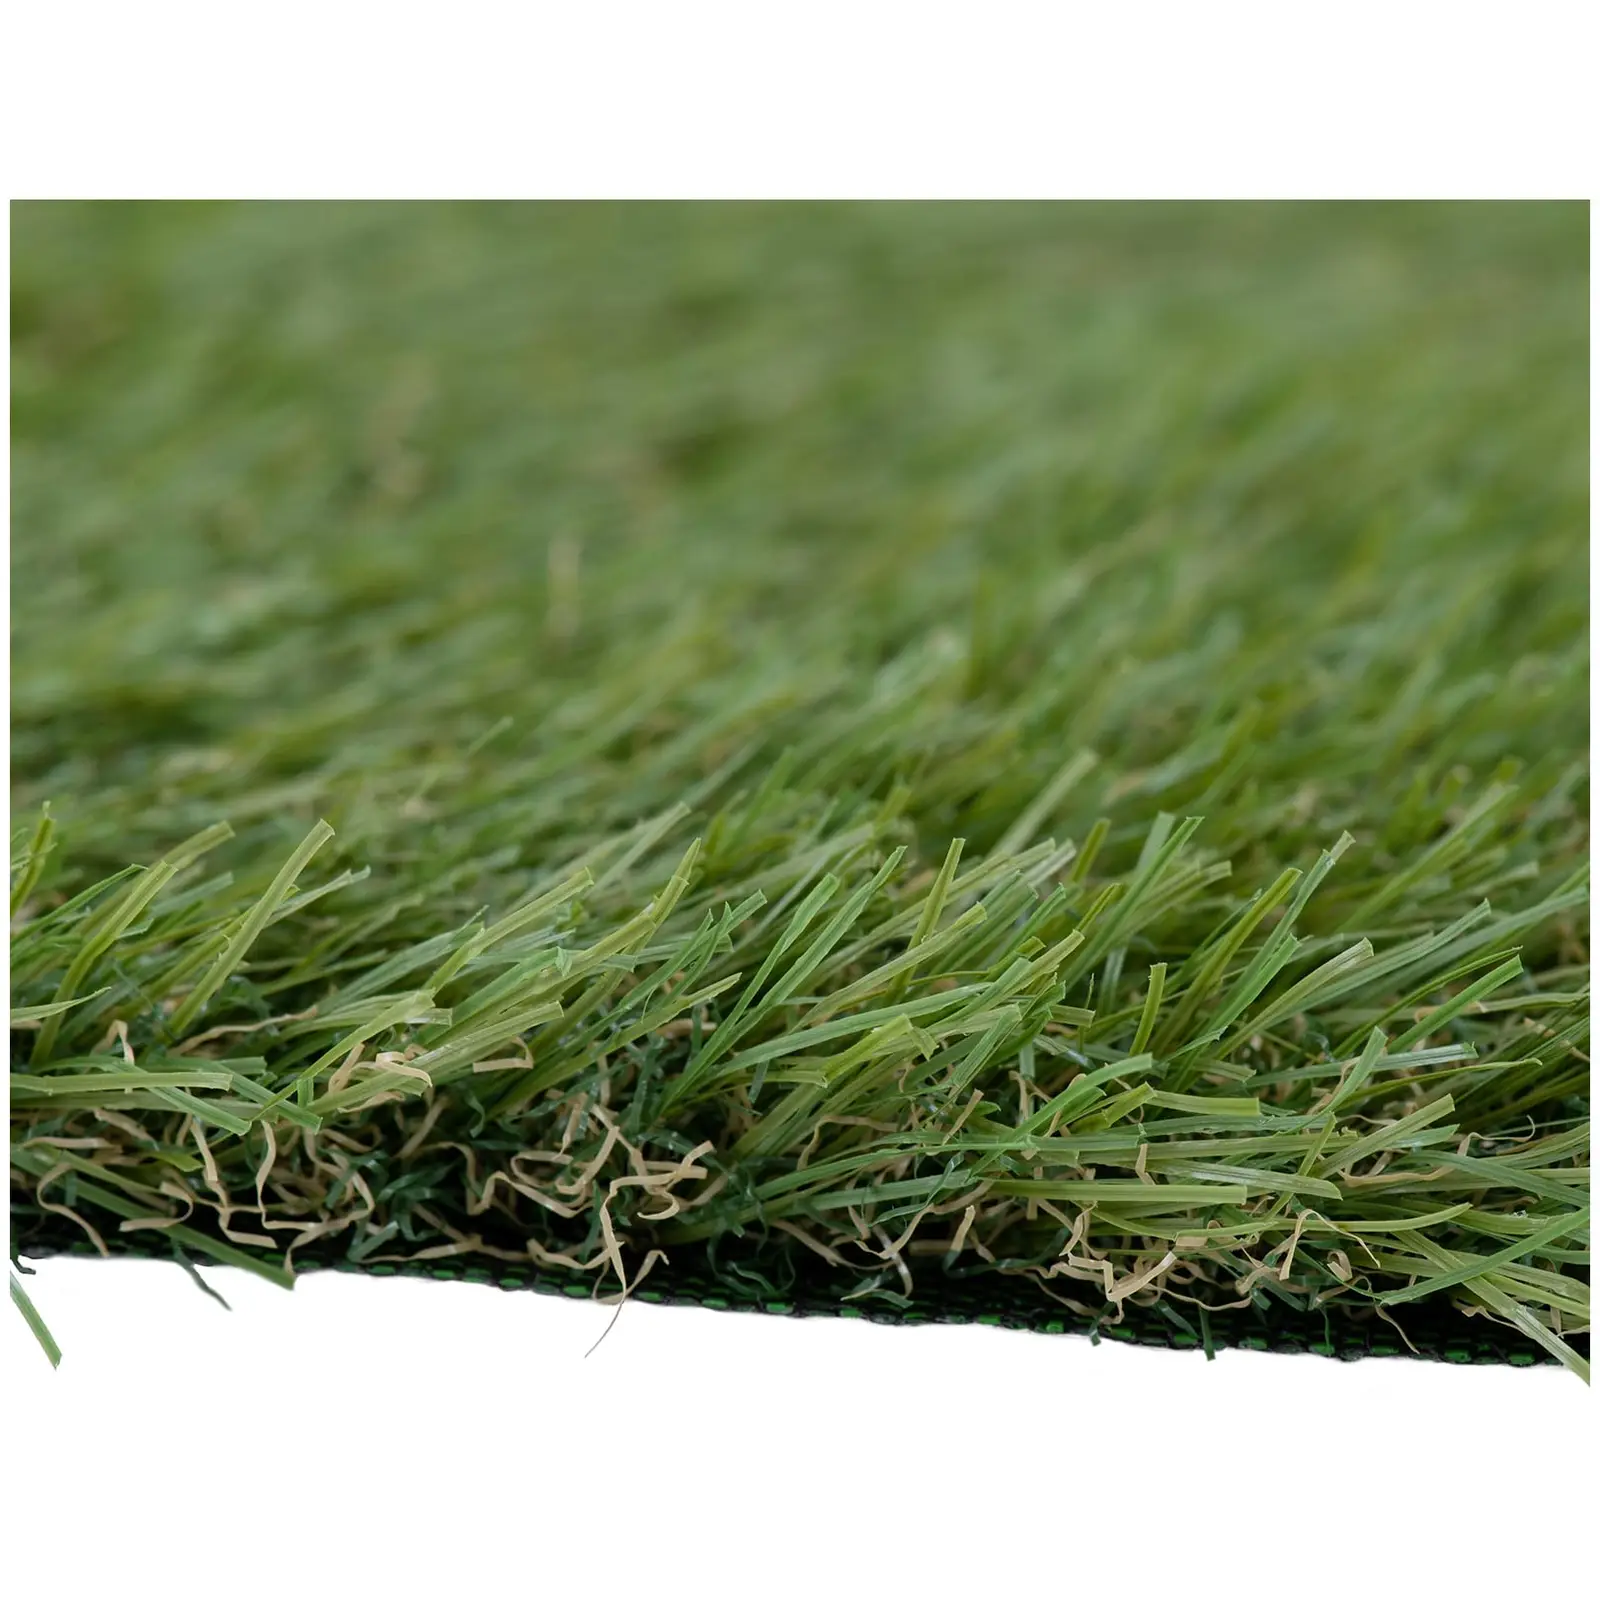 Kunstgræs - sæt med 5 stk. - 100 x 100 cm - højde: 30 mm - UV-resistent